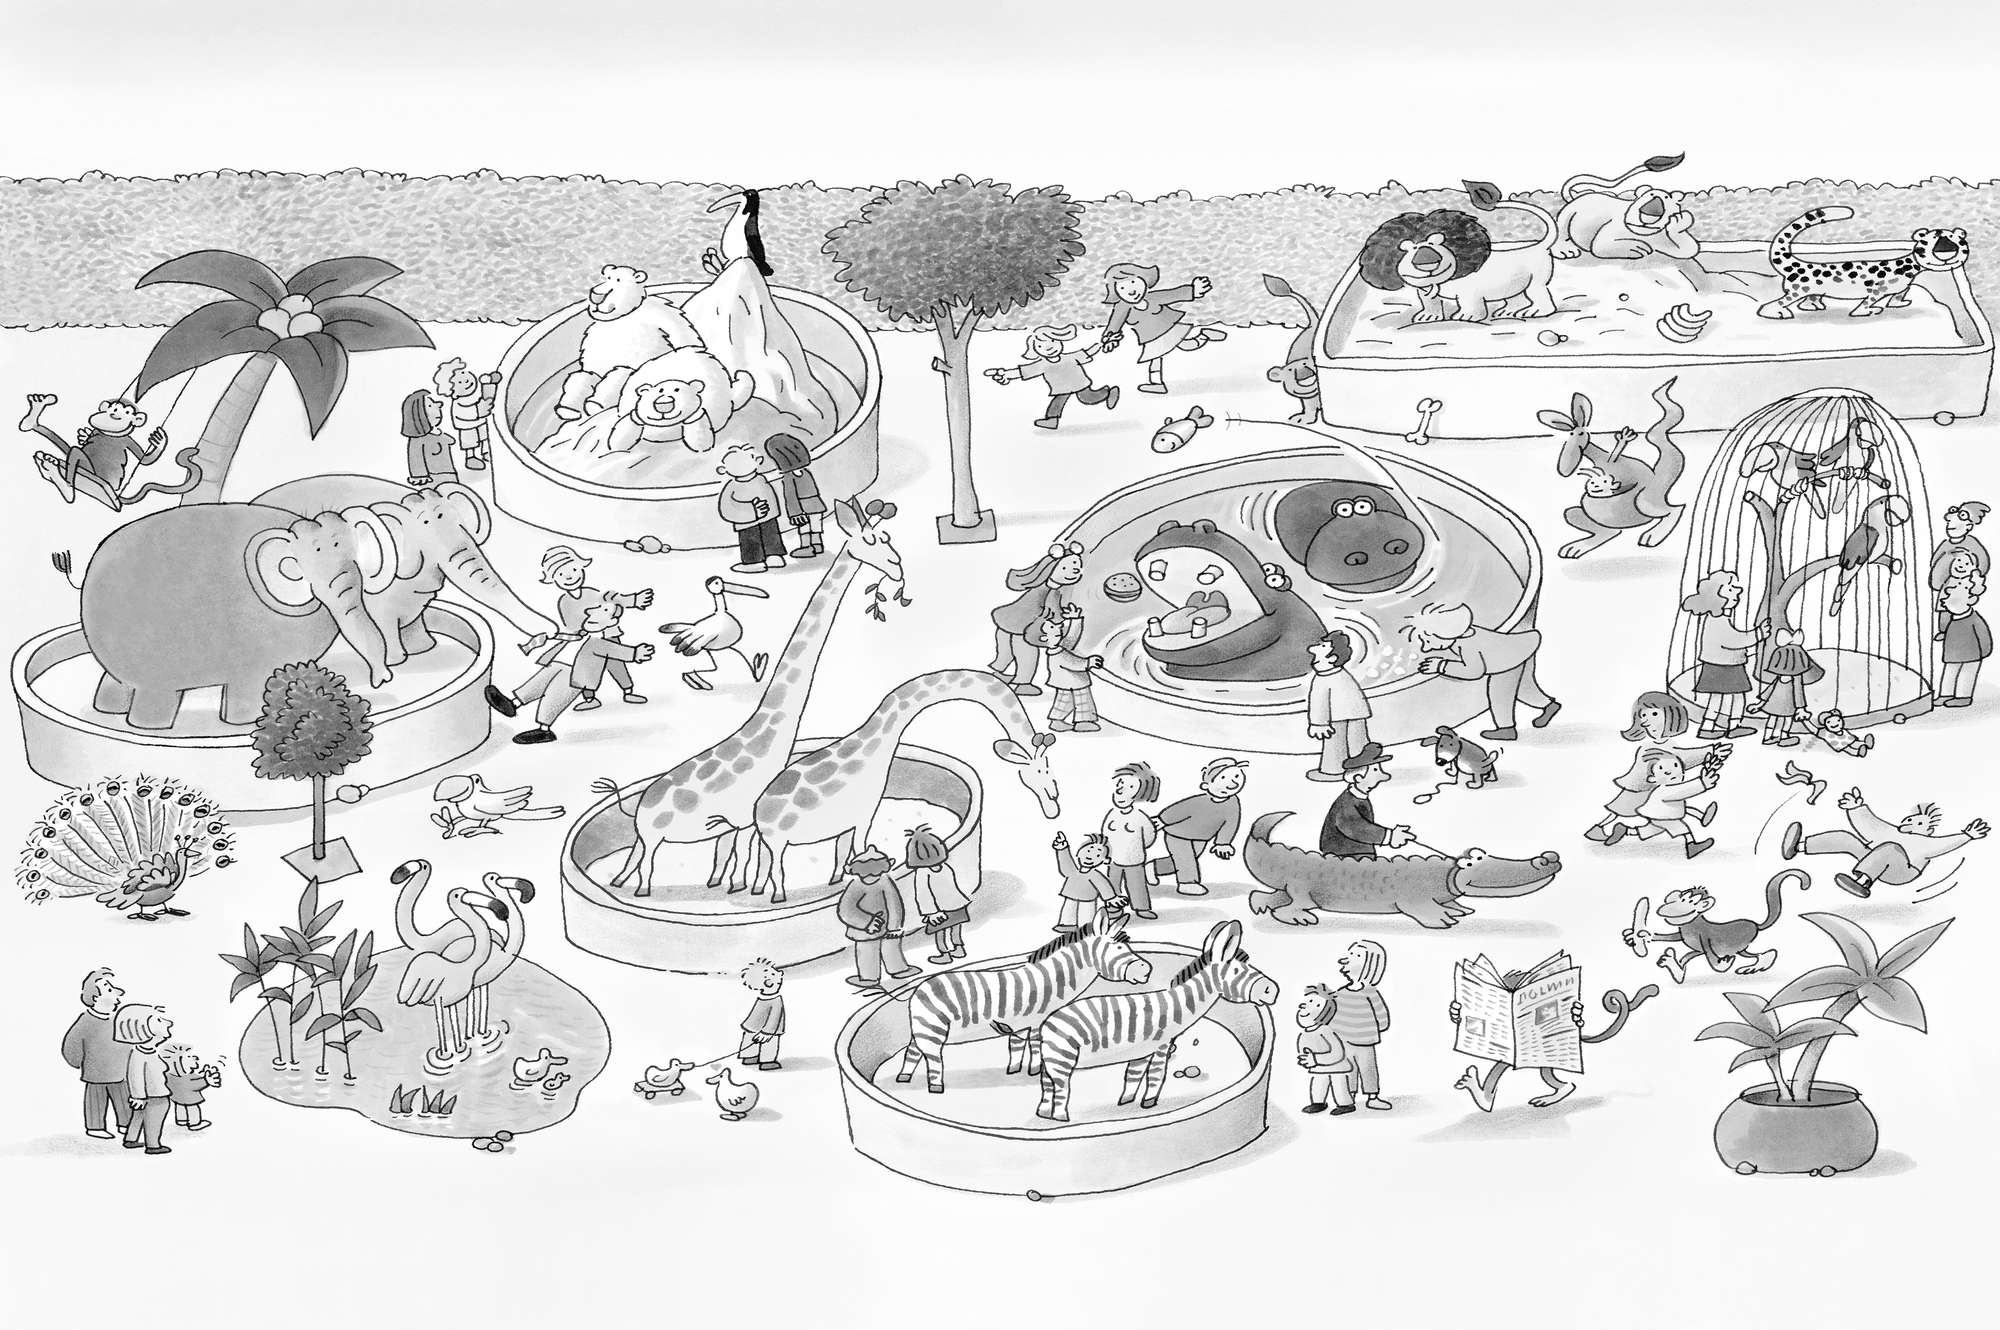             Kinder Fototapete Zoo Zeichnung in Schwarz Weiß auf Strukturvlies
        